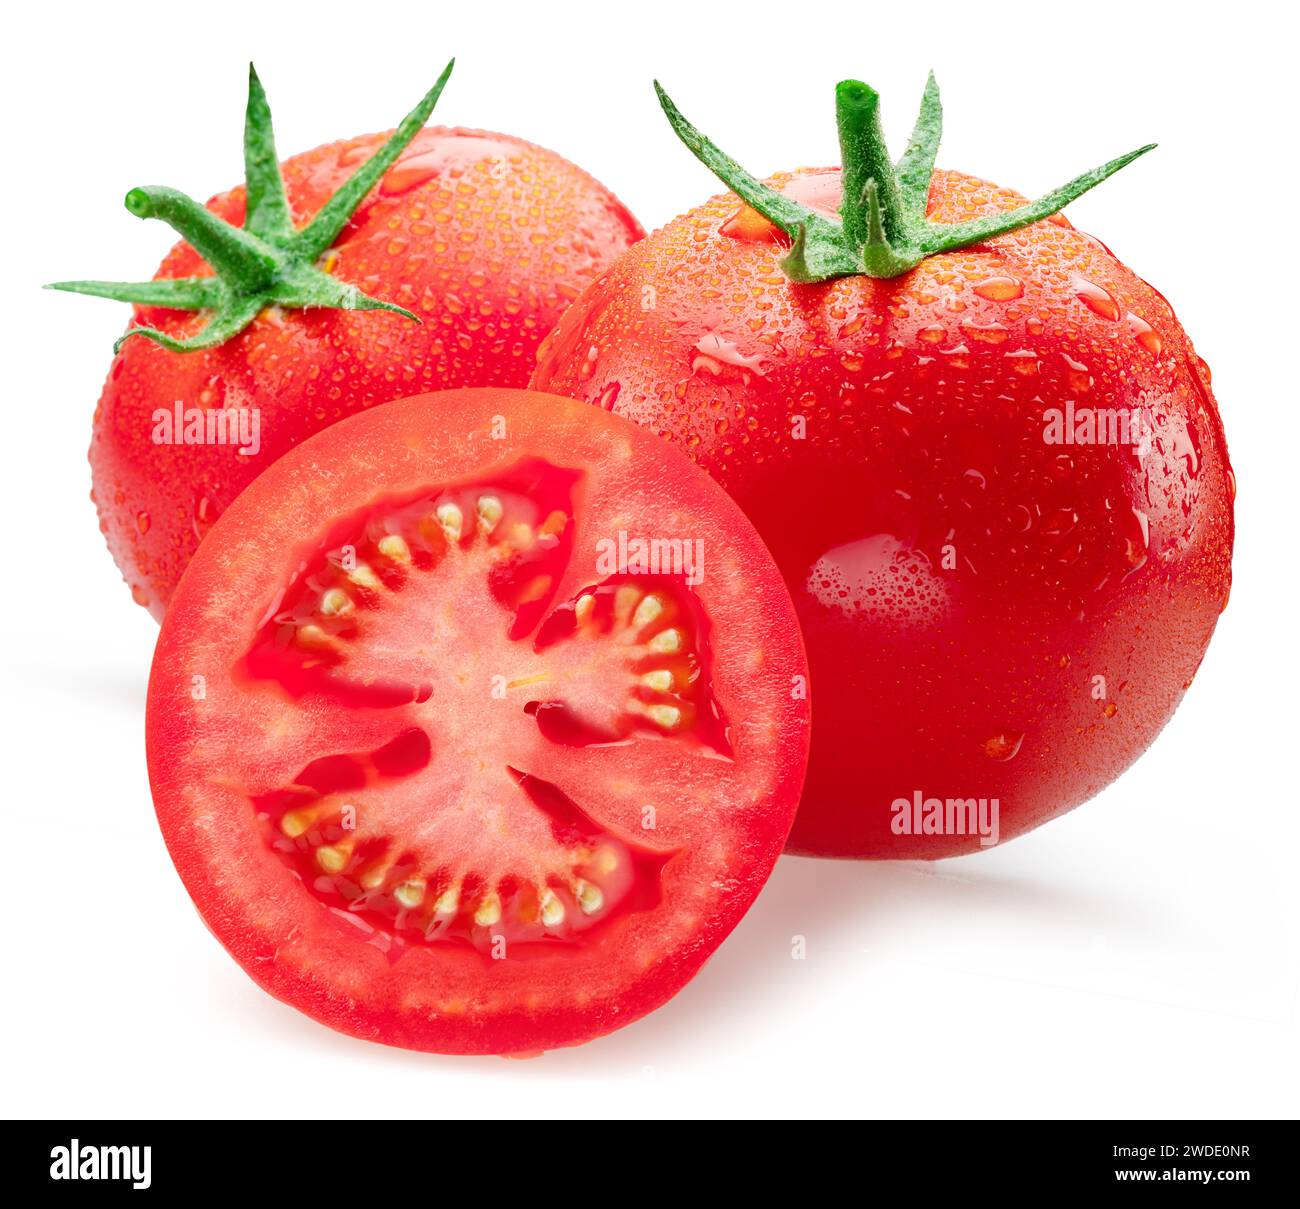 Pomodori rossi appena lavati ricoperti di gocce d'acqua su sfondo bianco. Foto Stock